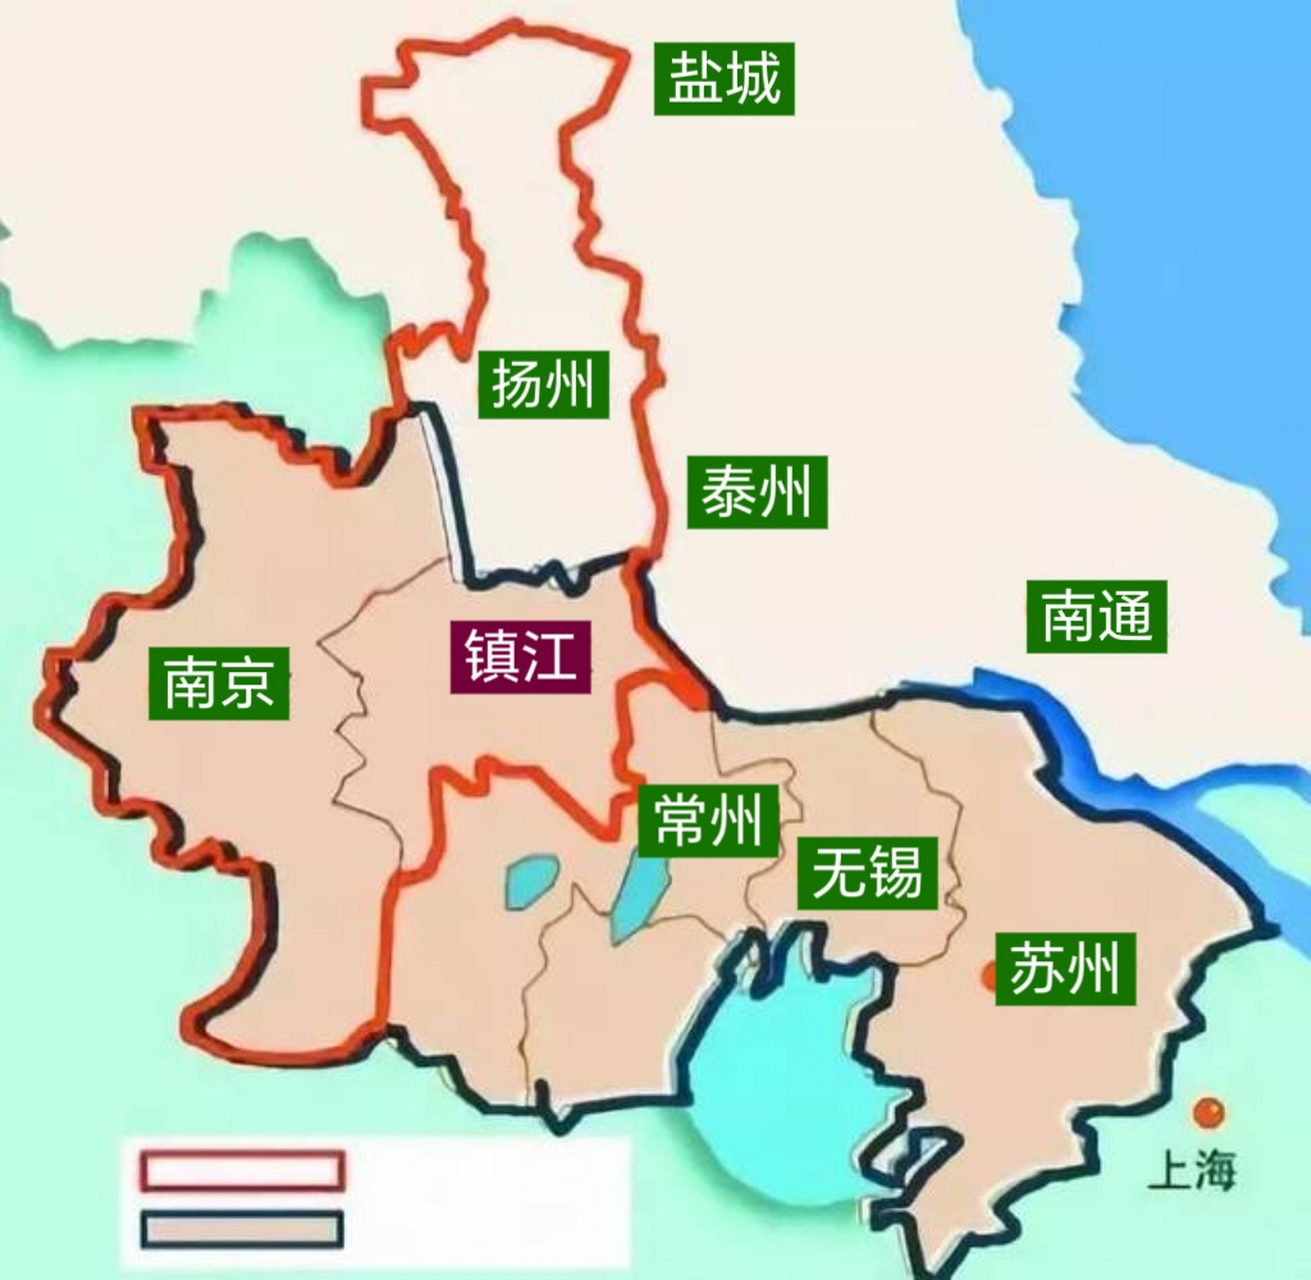 镇江地图导航图片